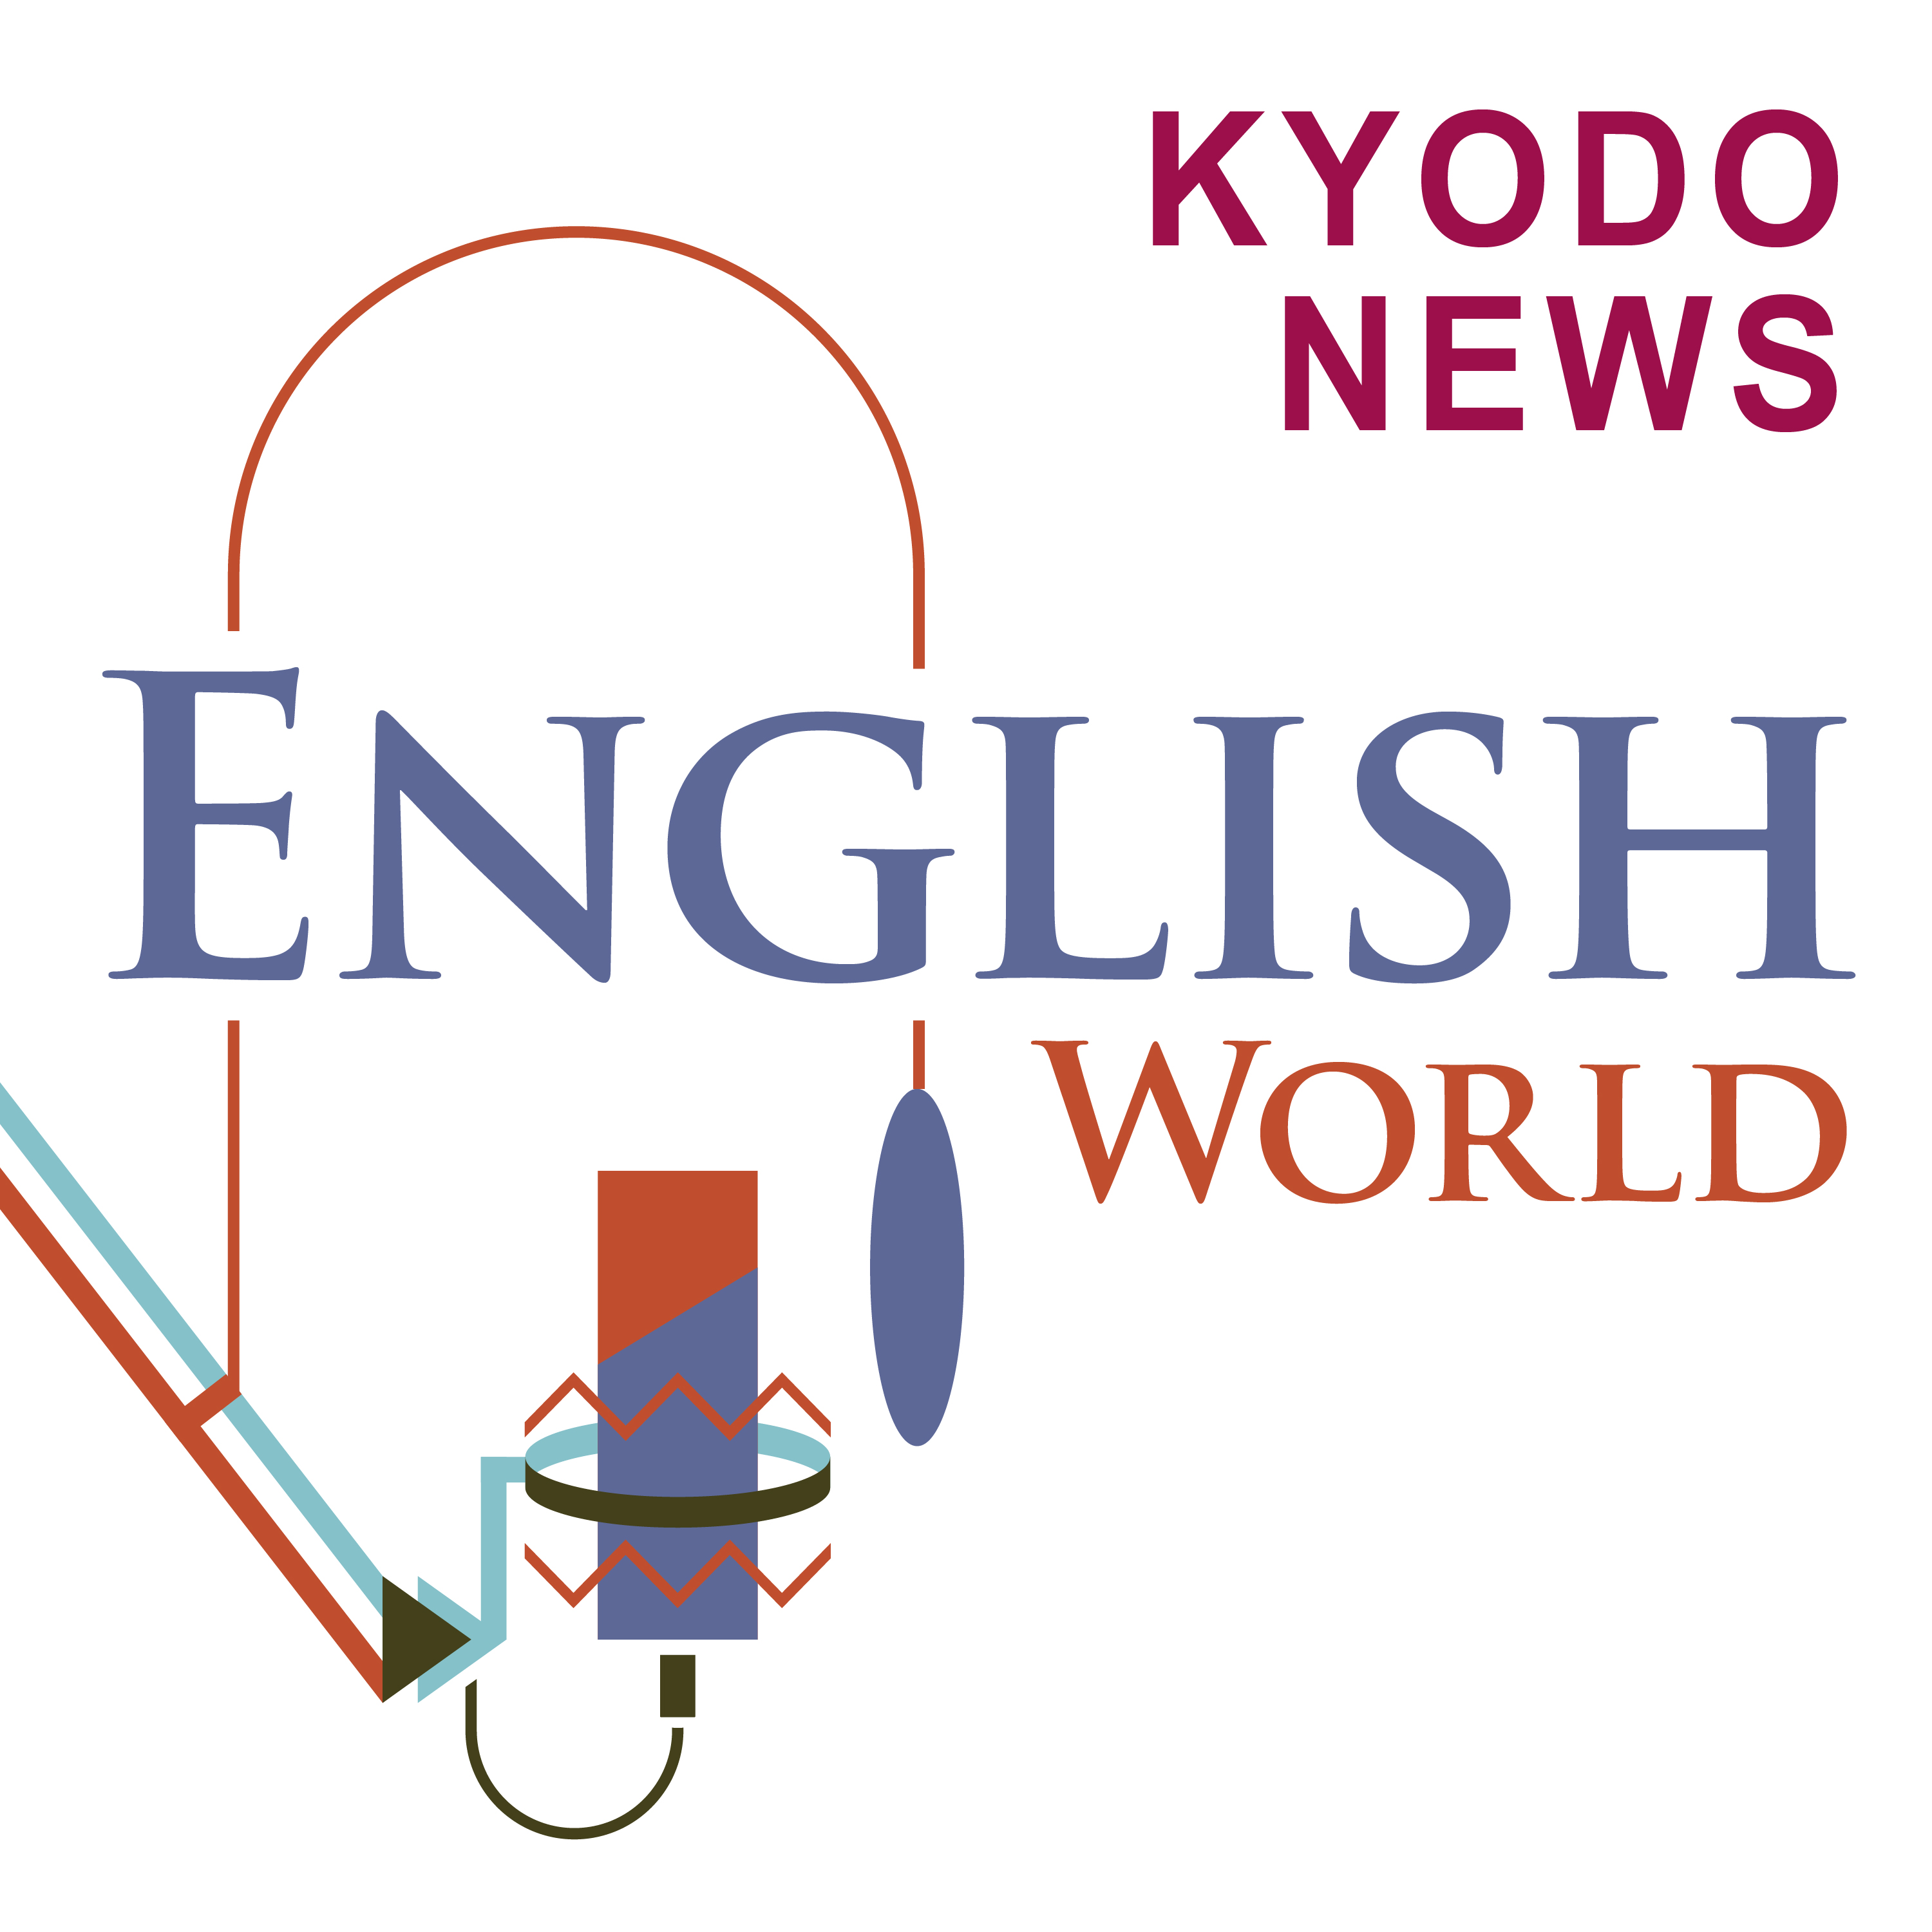 #19 【English World】渋谷のハロウィーンを現地取材、コロナ前とどう違う？街で見かけたおもしろコスチュームや興味深い人々も紹介